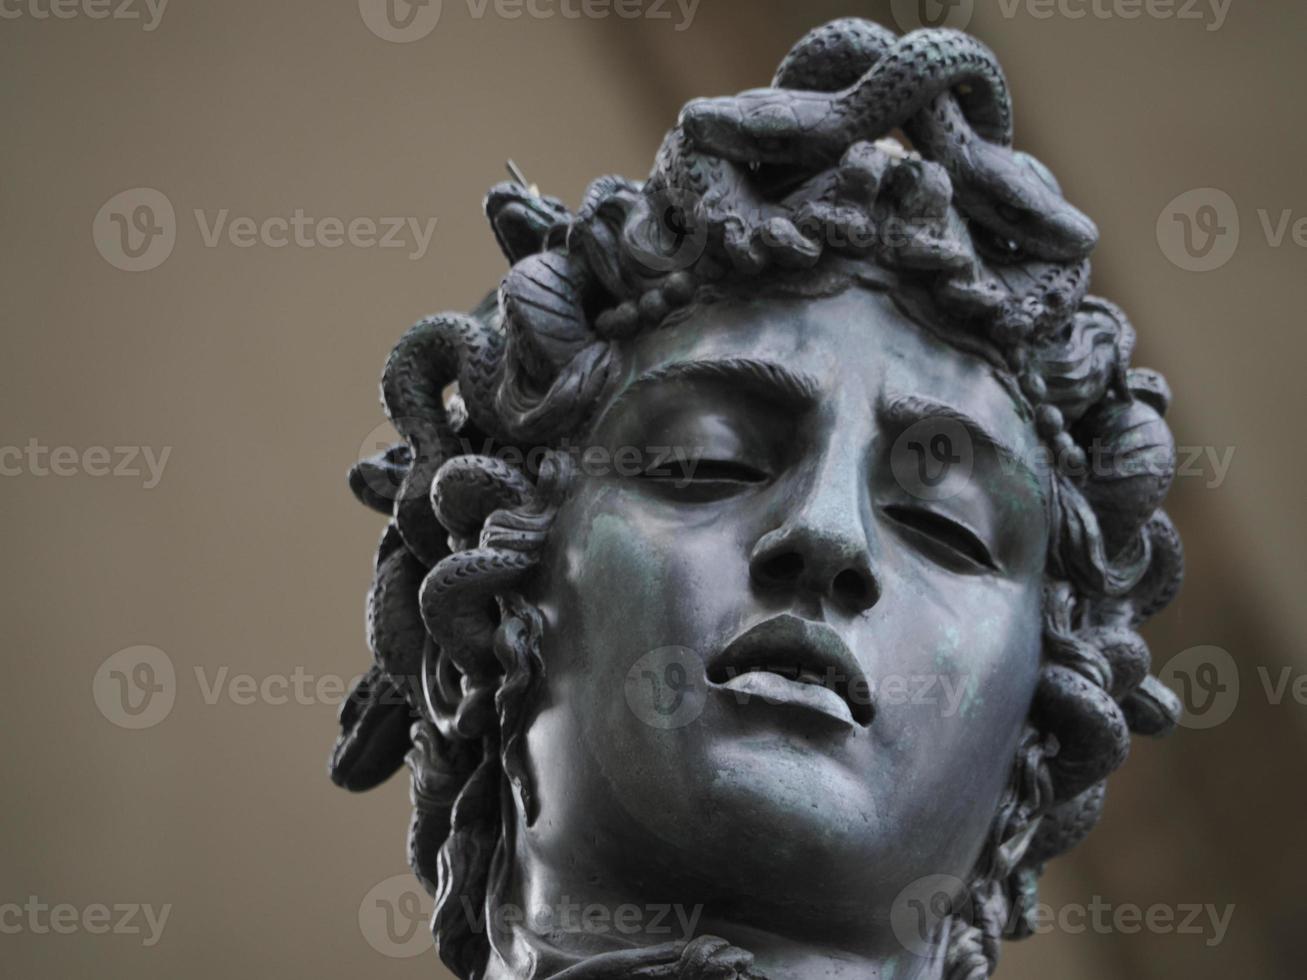 detalhe da estátua de bronze perseus cellini foto